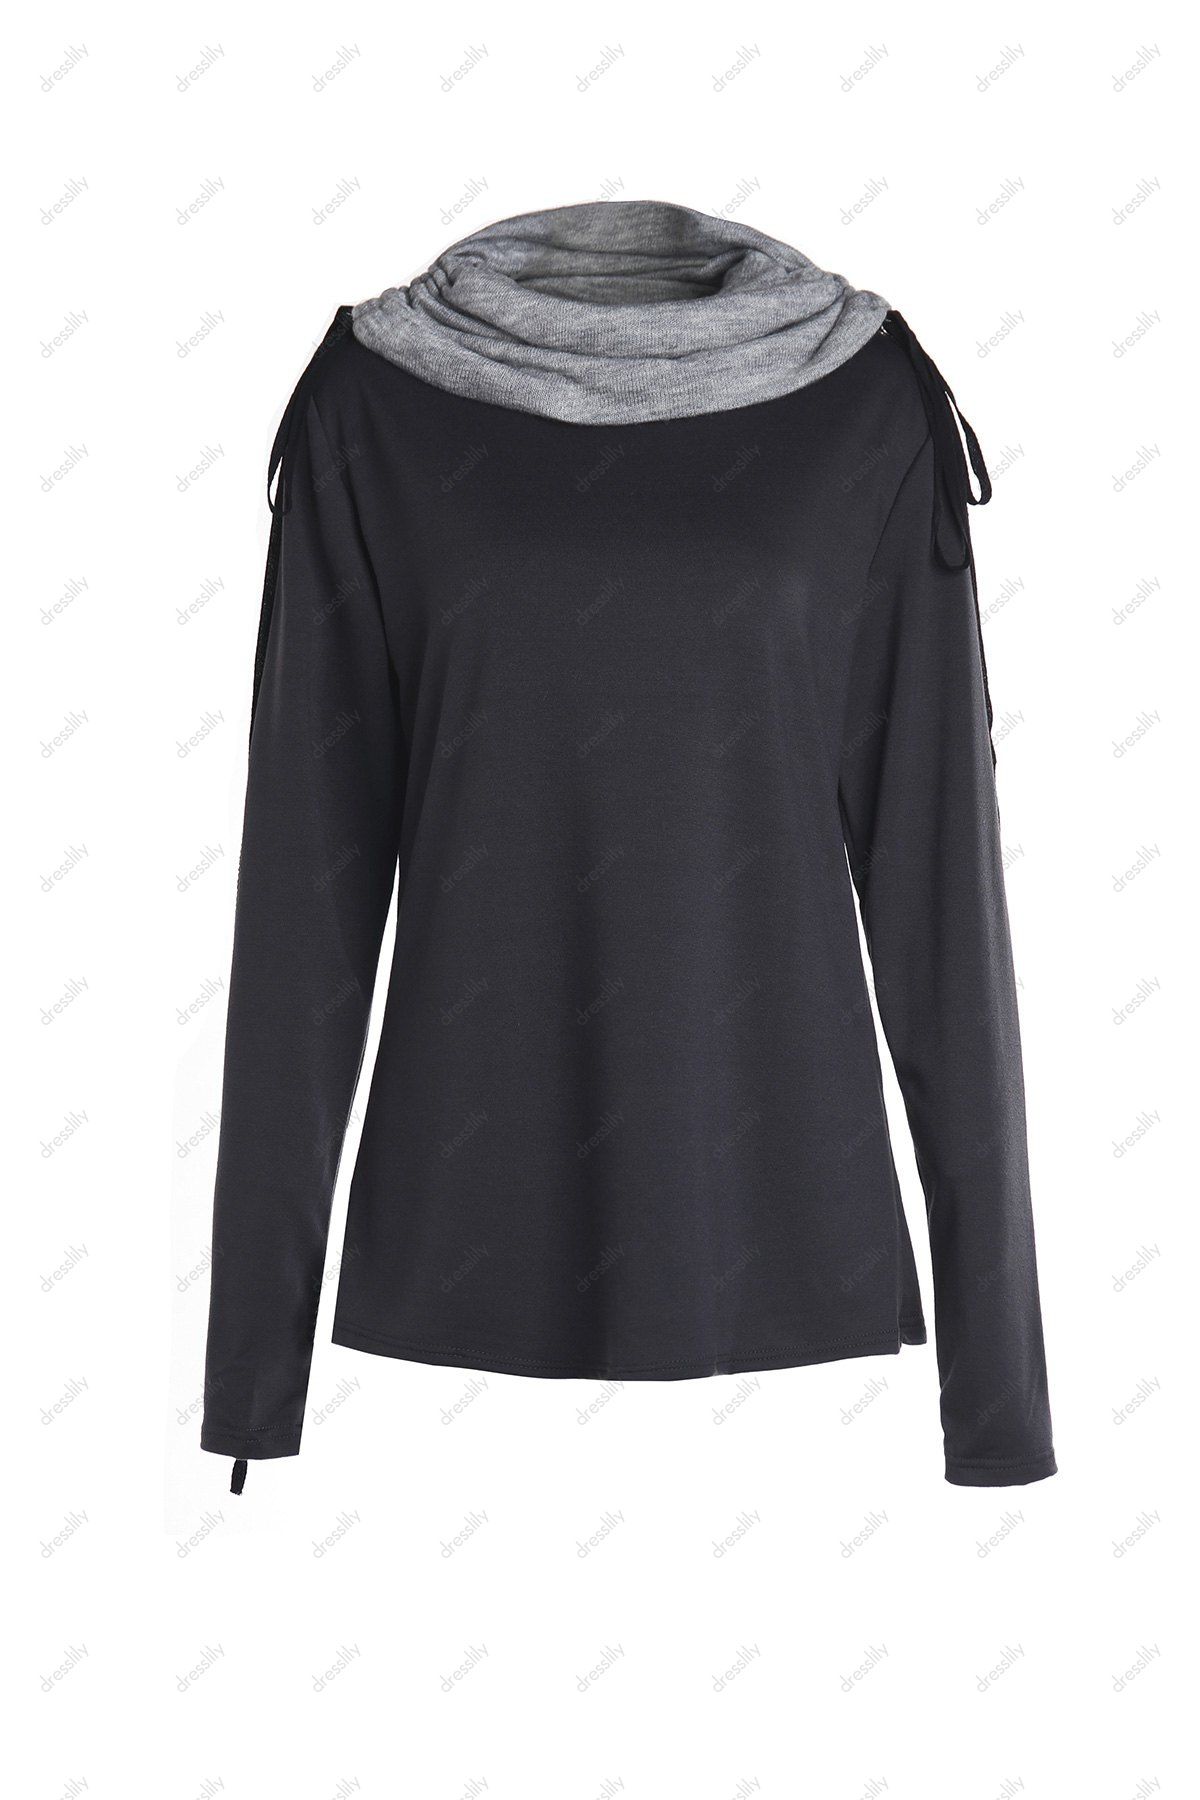 Sweat-shirt à Col Roulé à Manches Longues Pour Femme - Noir XL